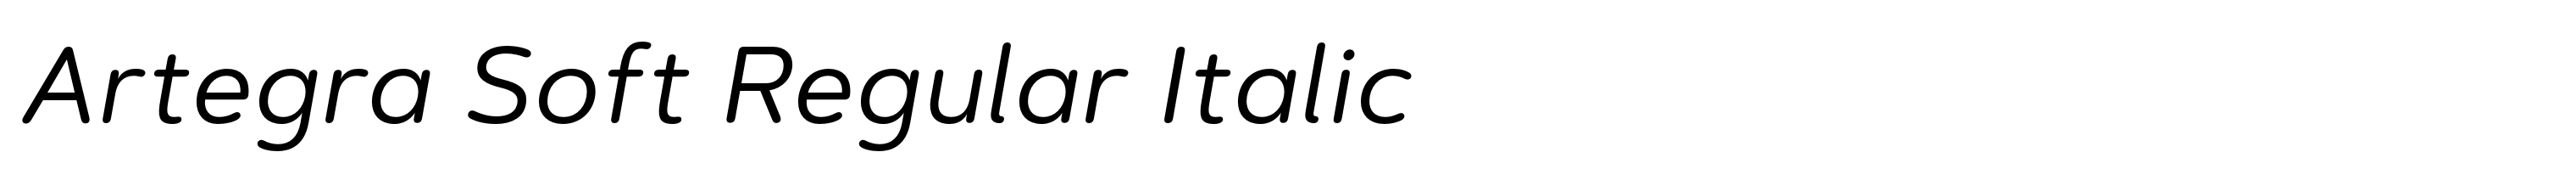 Artegra Soft Regular Italic